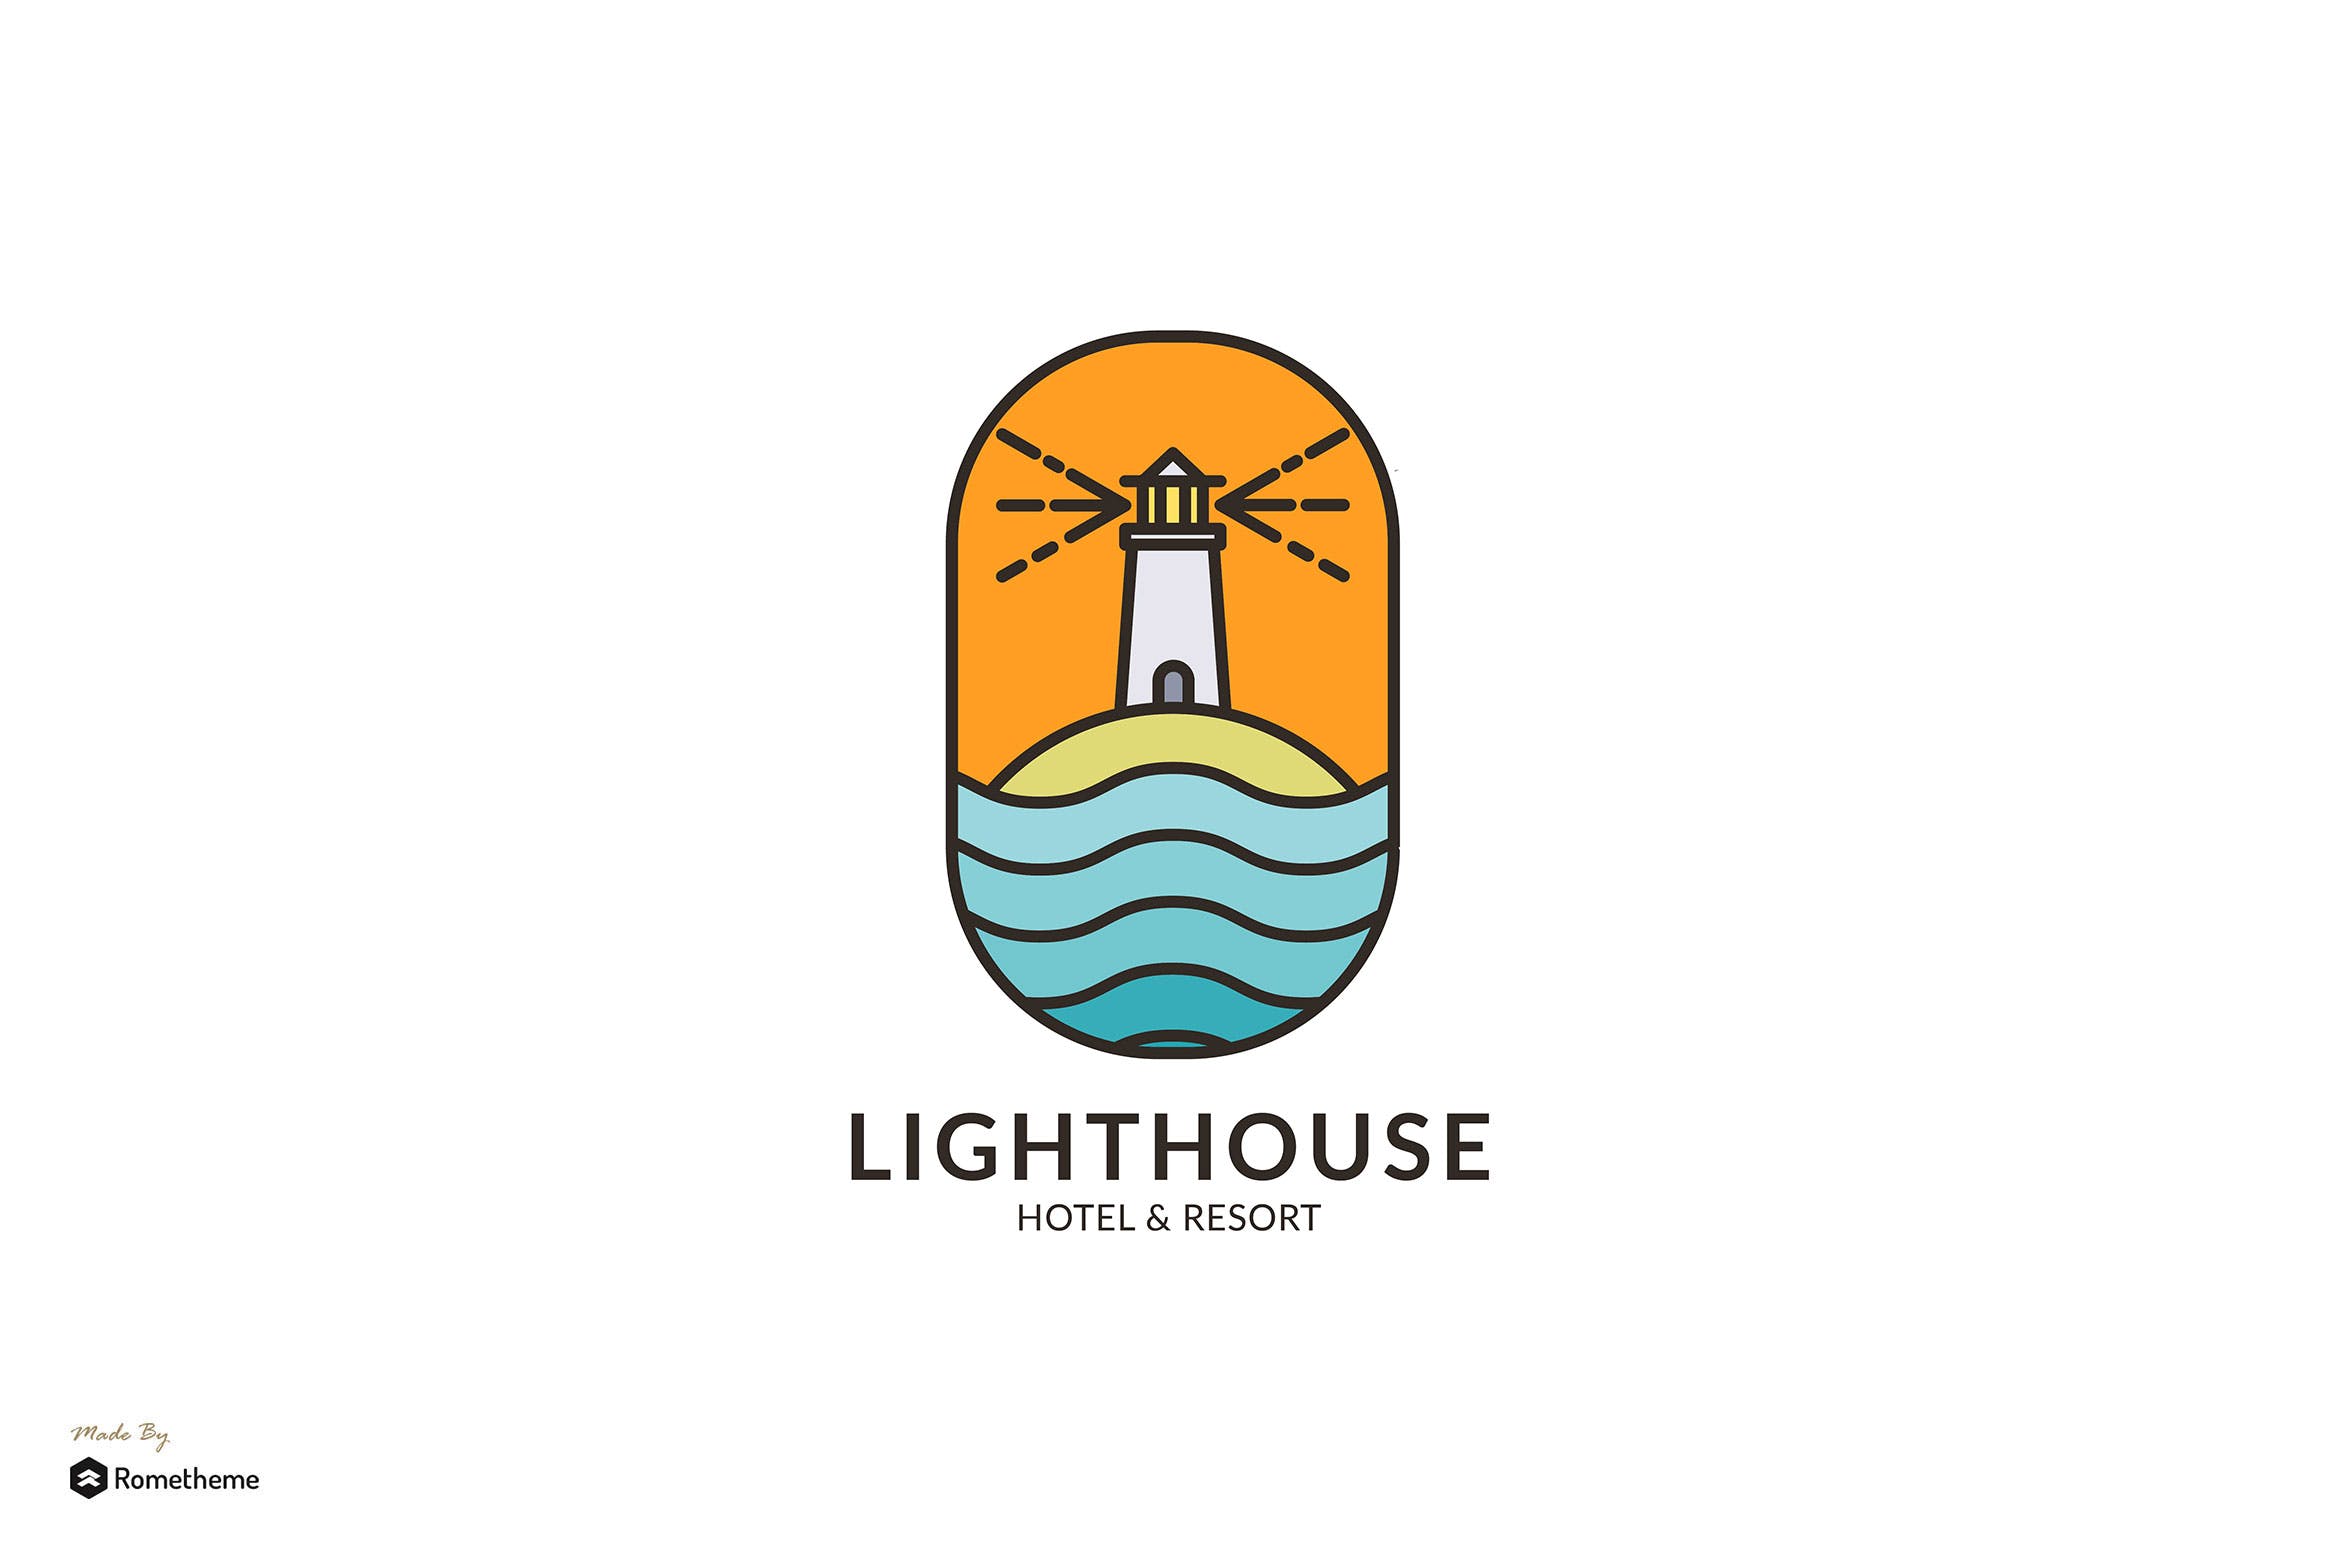 灯塔酒店/度假村商标&品牌Logo设计蚂蚁素材精选模板 Lighthouse Hotel & Resort – Logo Template RB插图